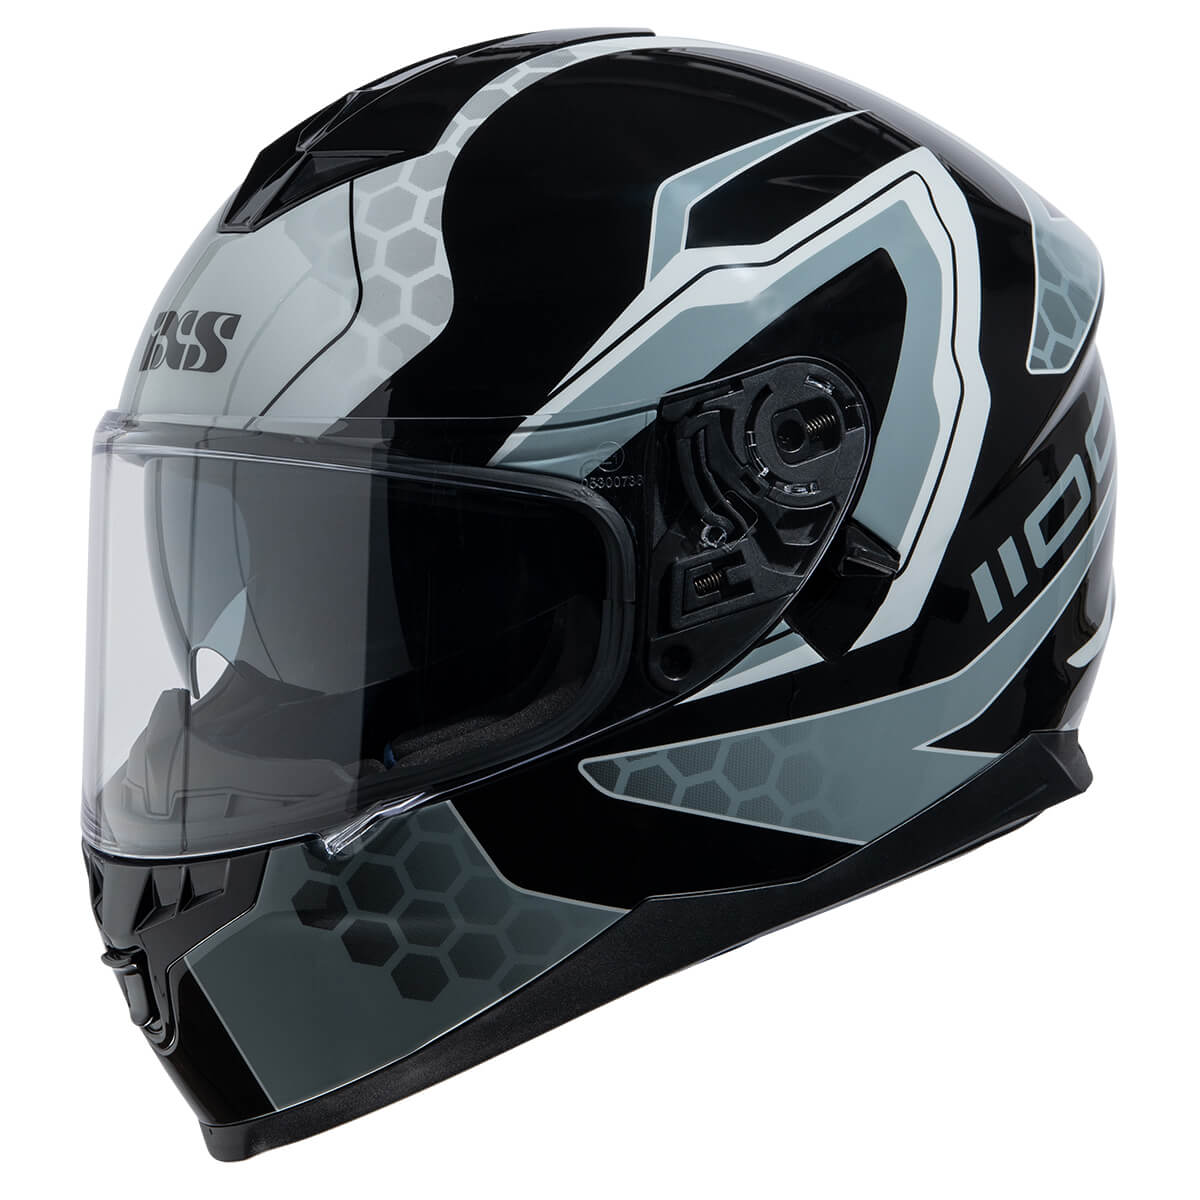 Zubehör Ersatzteil IXS Visier passend für den Motorrad Helm iXS1100